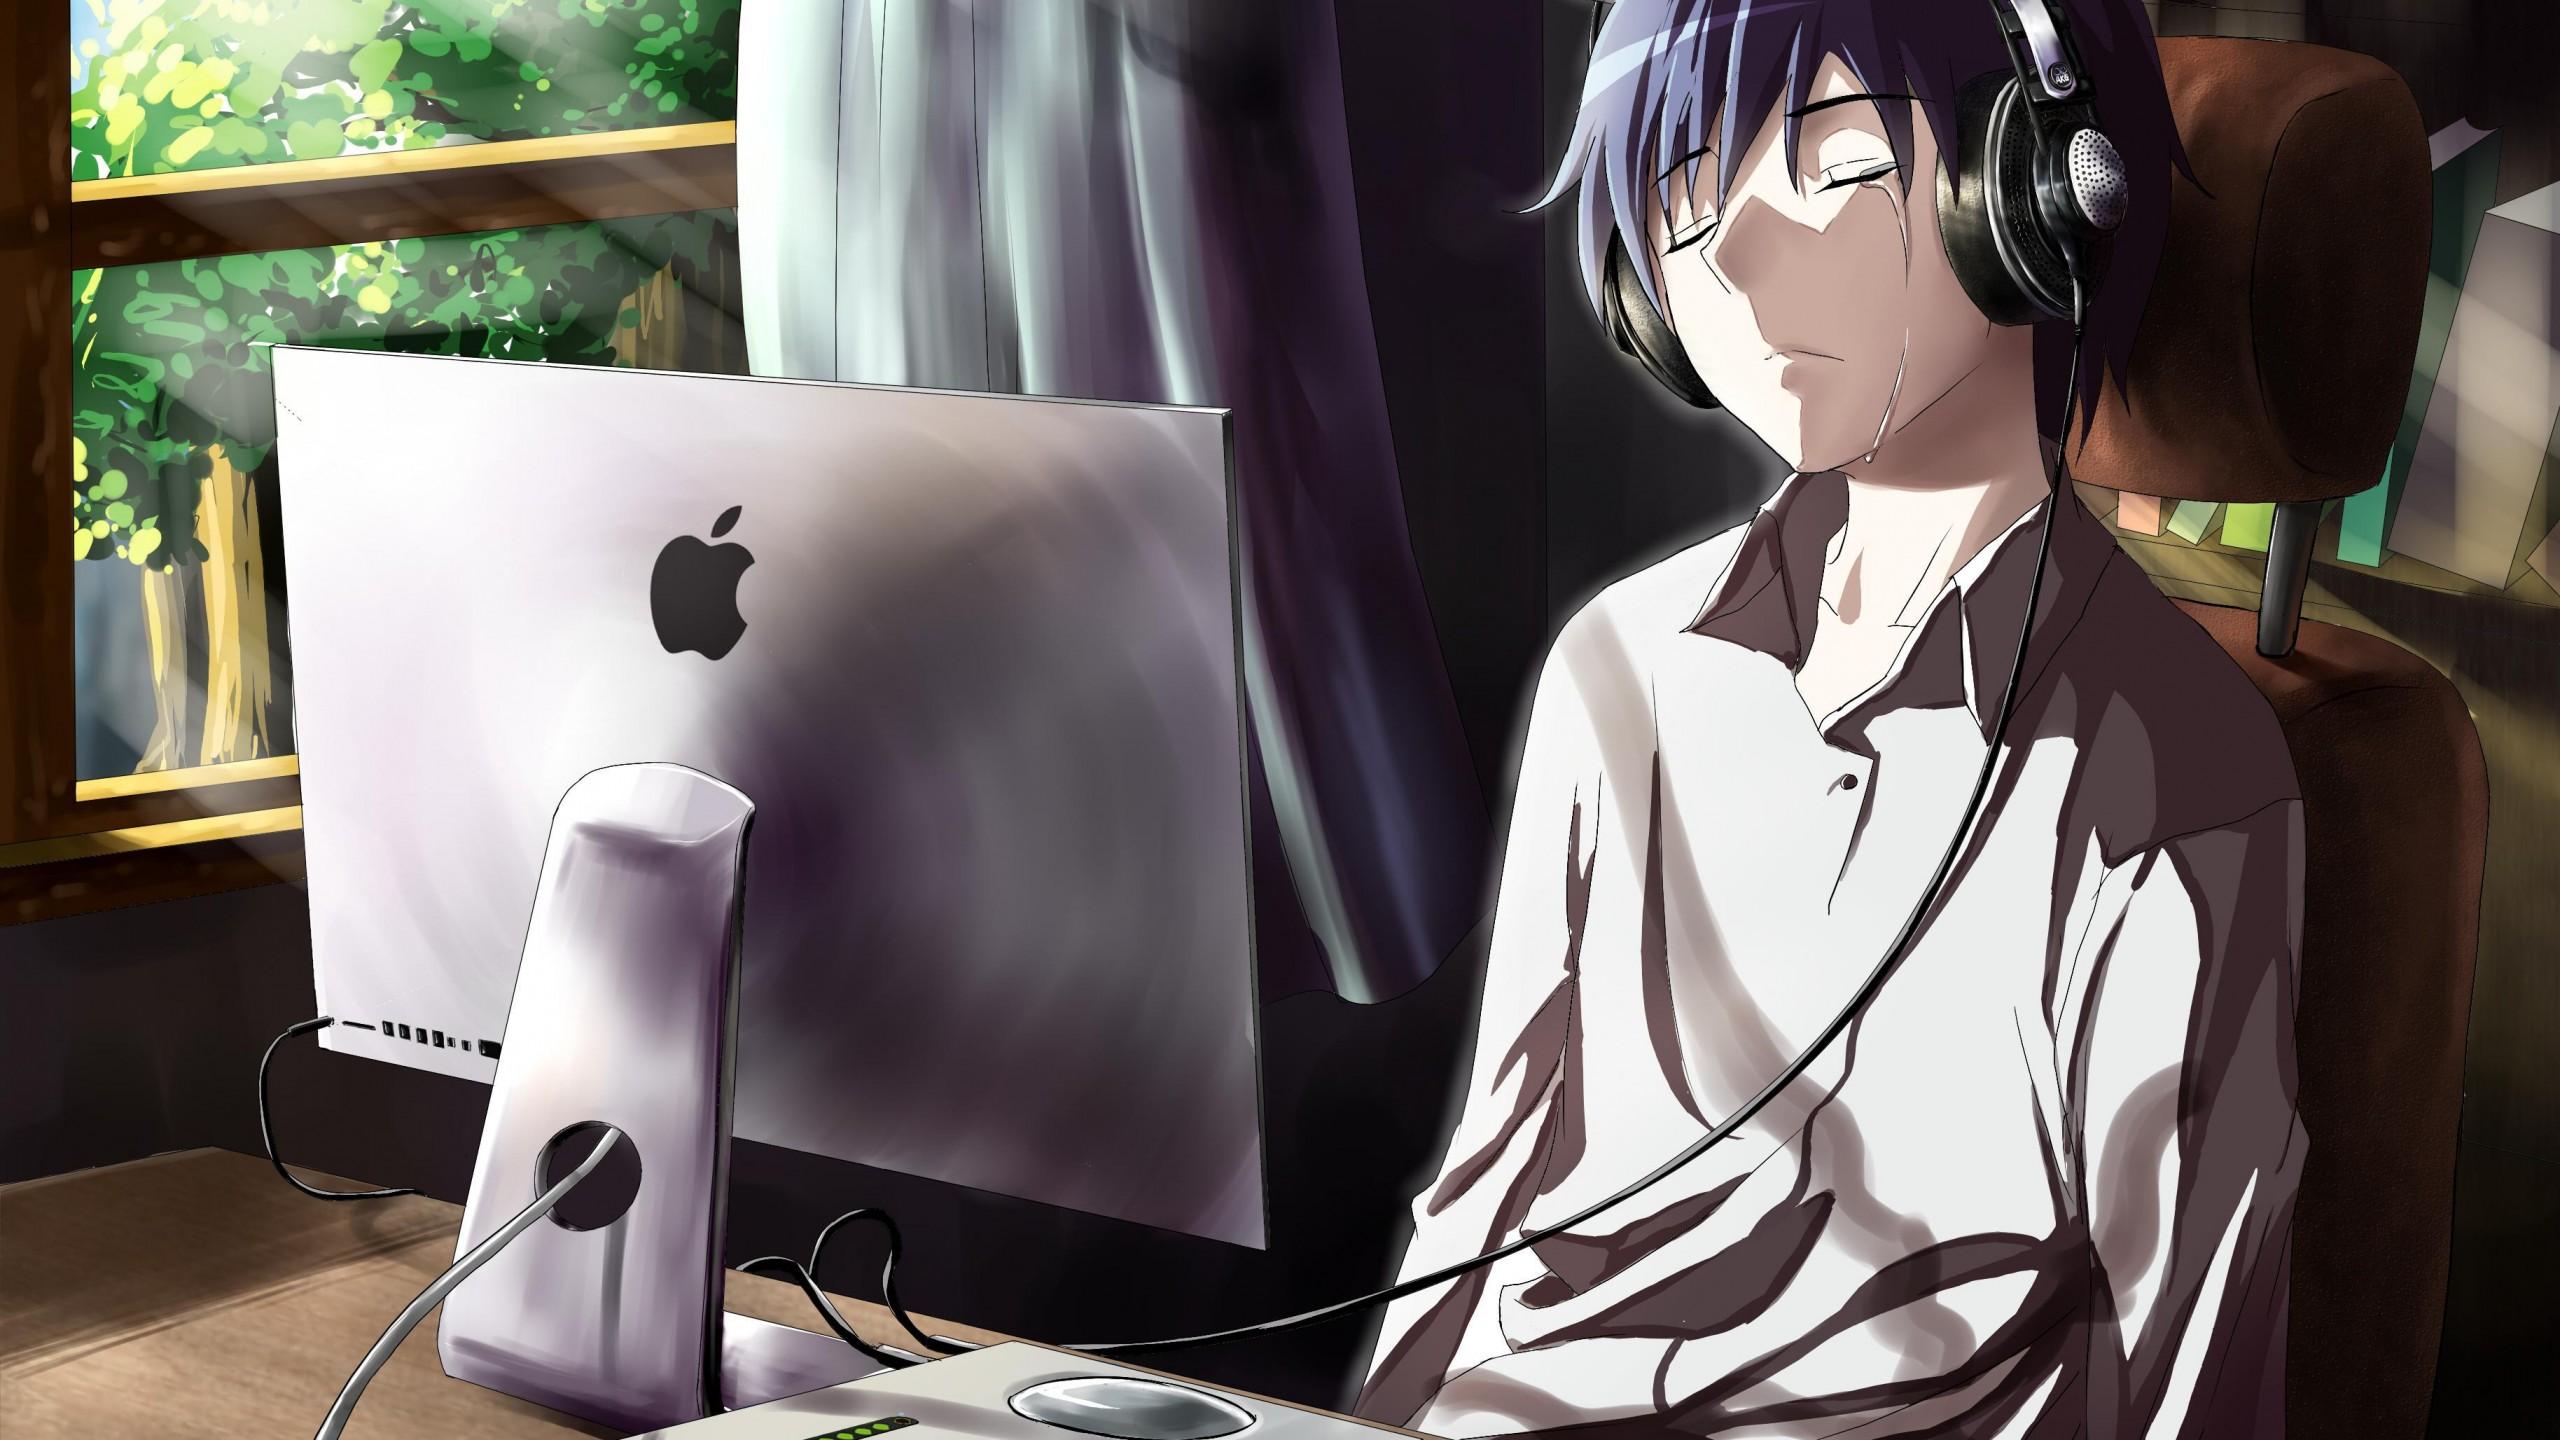 Guy, Anime, Computer, Tears, Sadness, Room Boy Wallpaper